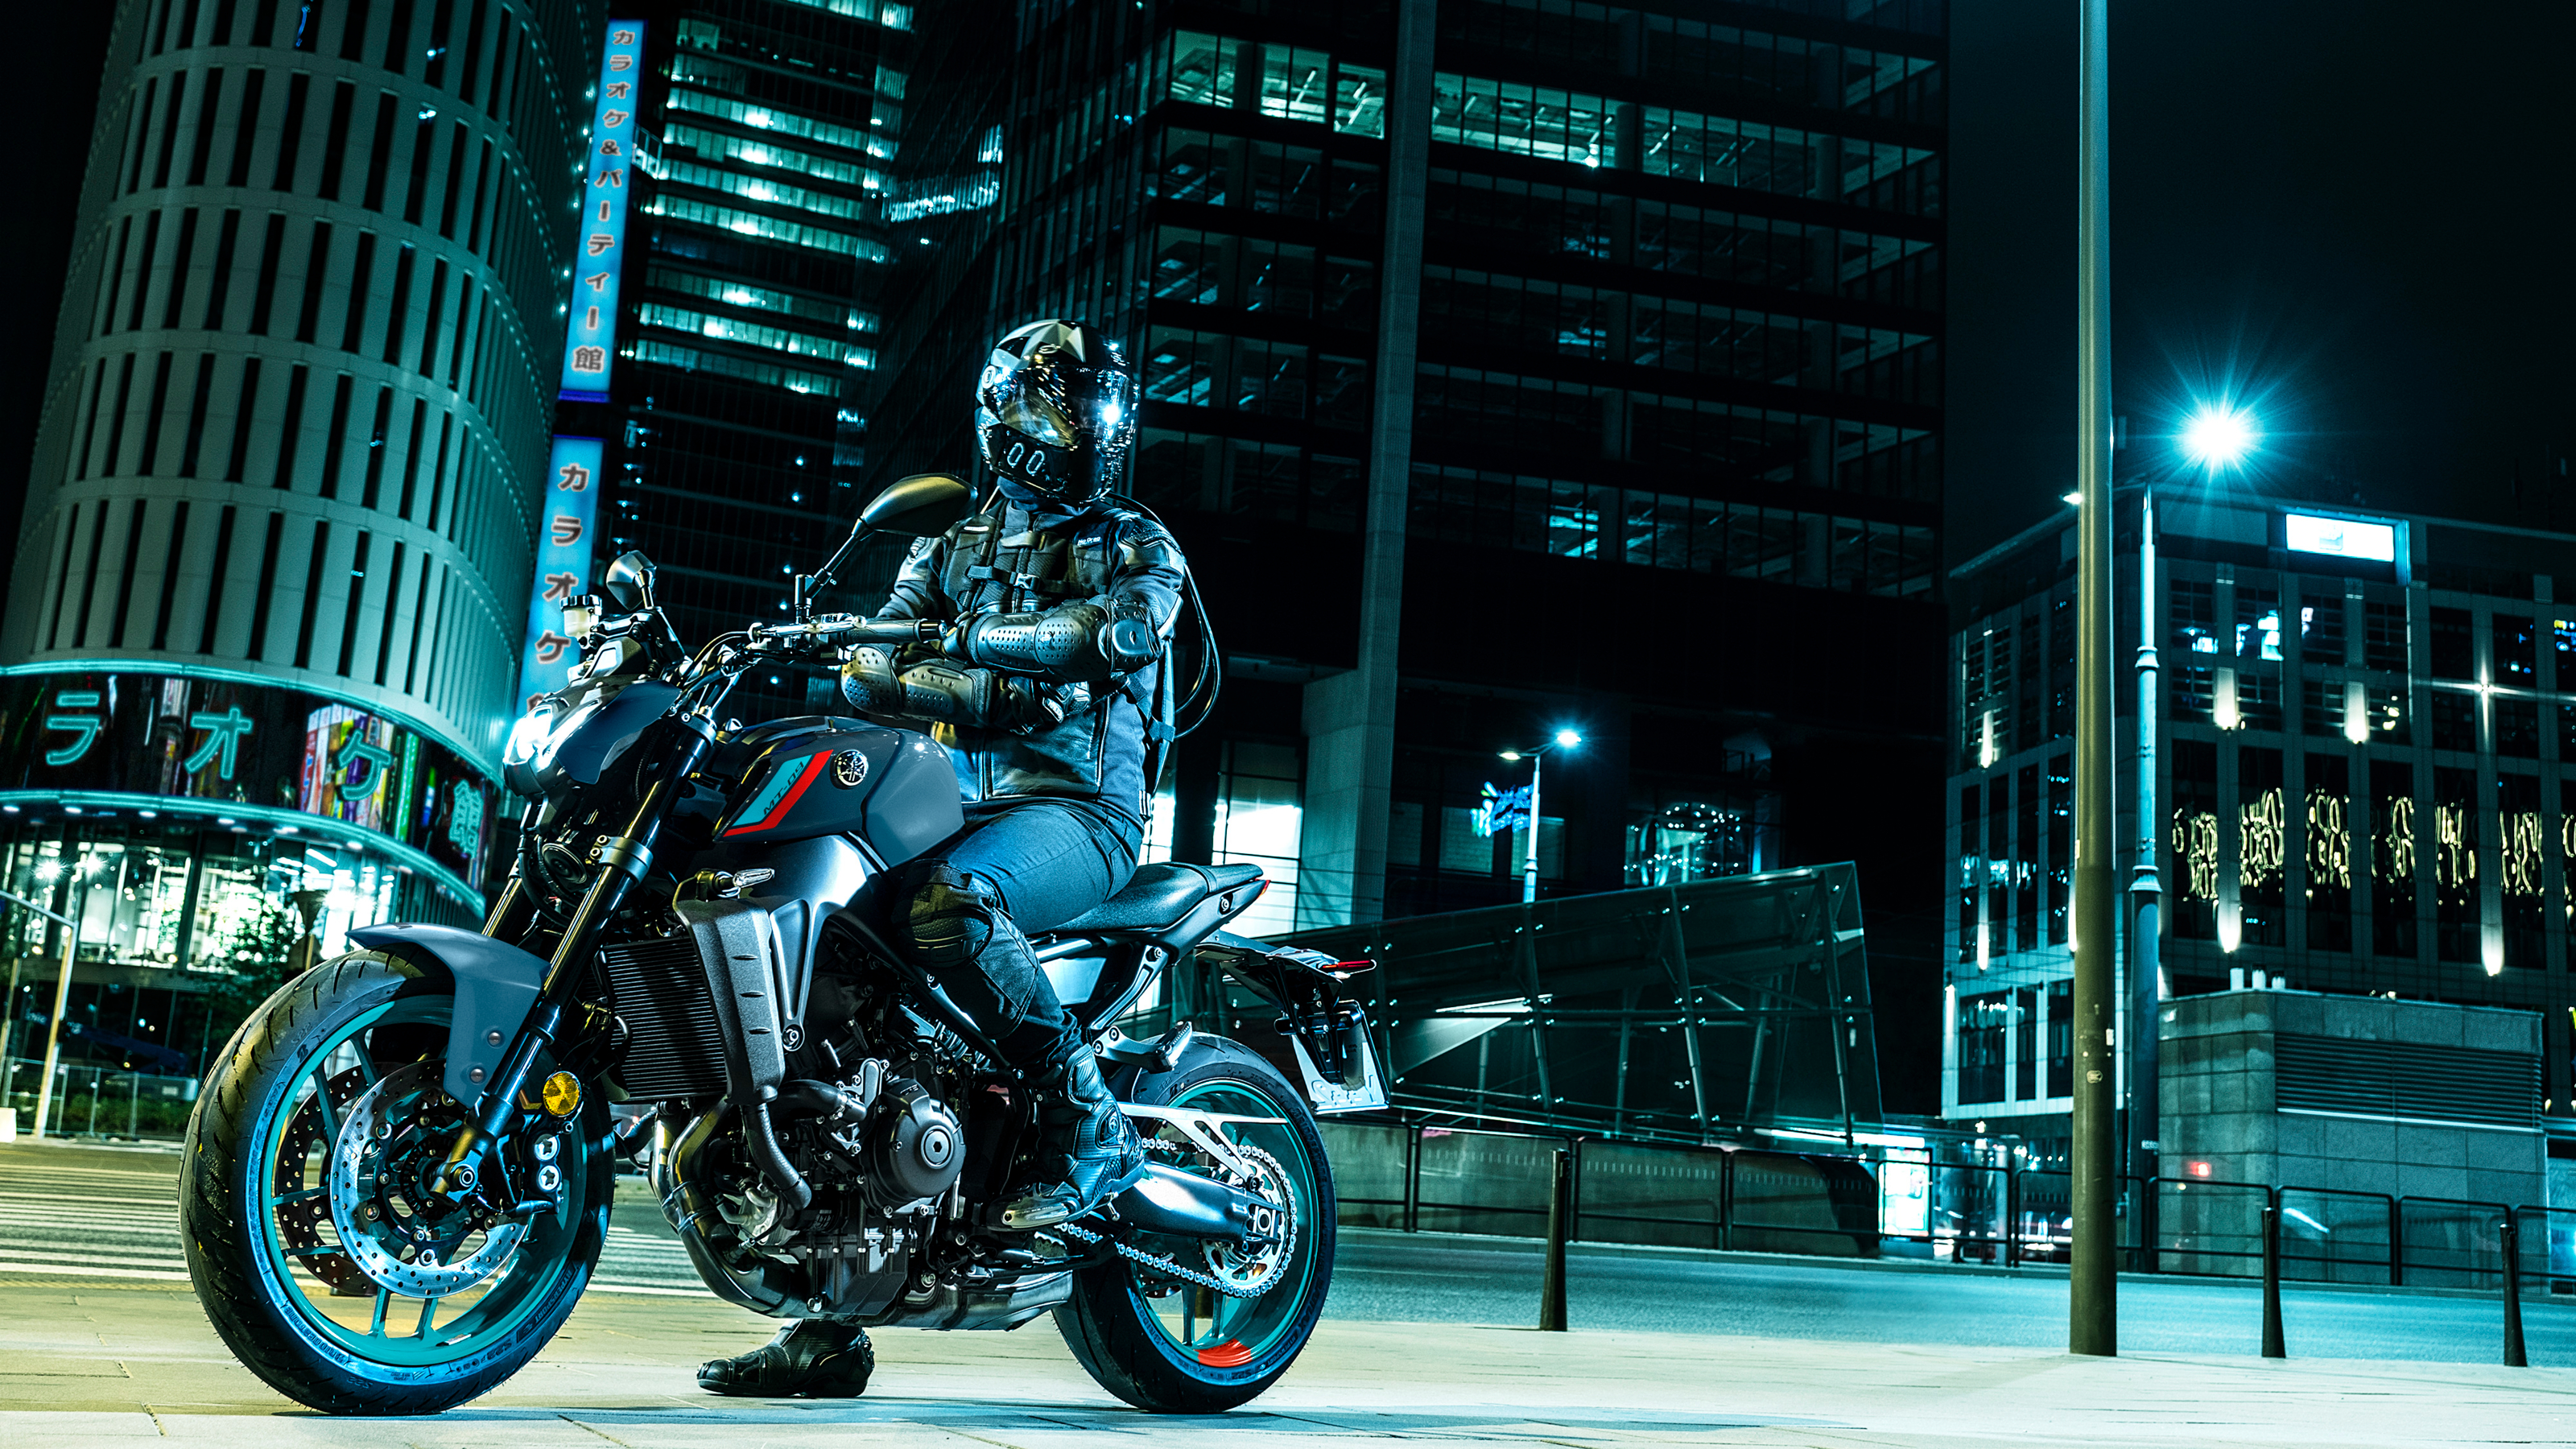 Motorrad Yamaha MT-09 SP , Baujahr: , 5 km , Preis: 10.660,37 EUR. aus  Bayern